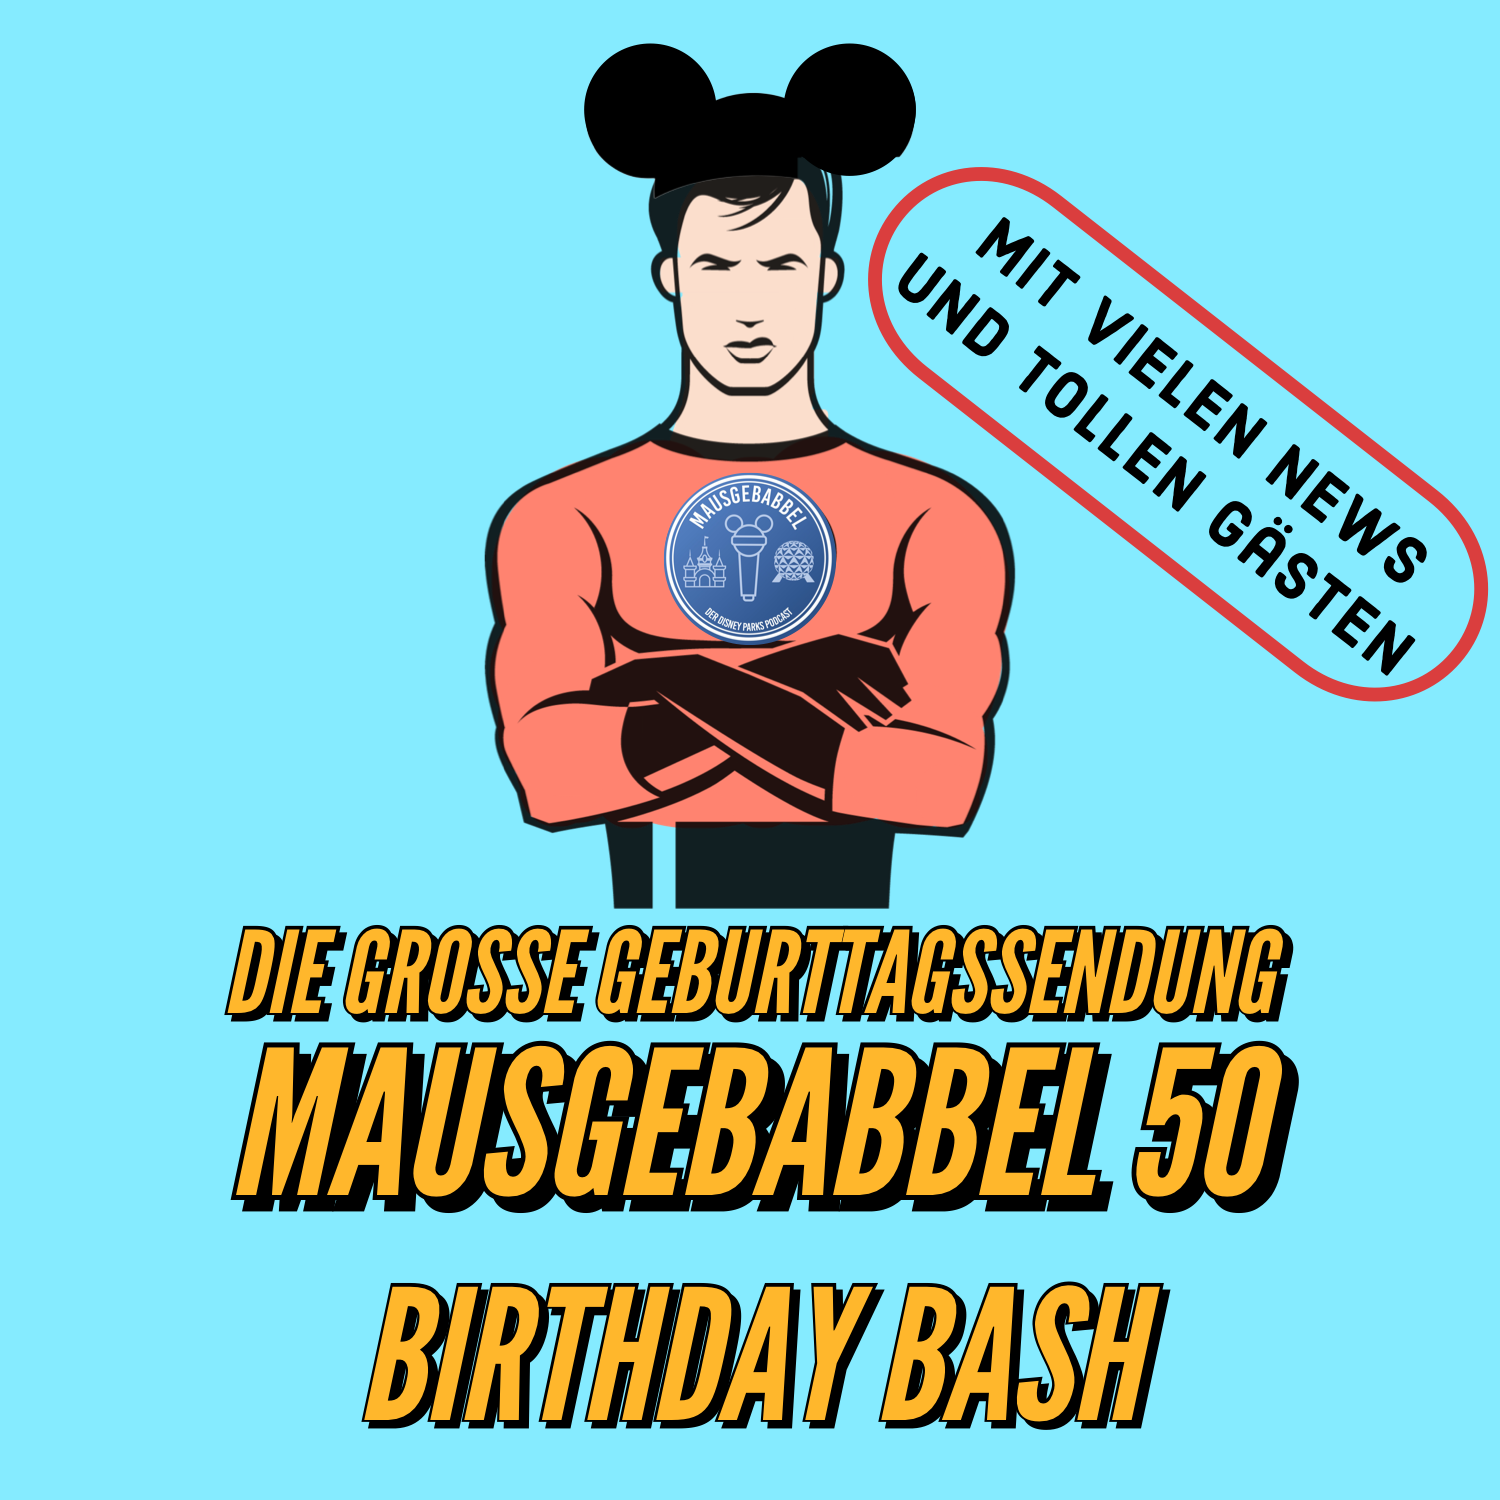 Mausgebabbel 50 - die große Geburtstagssendung mit vielen Disney Parks News und tollen Gästen 5